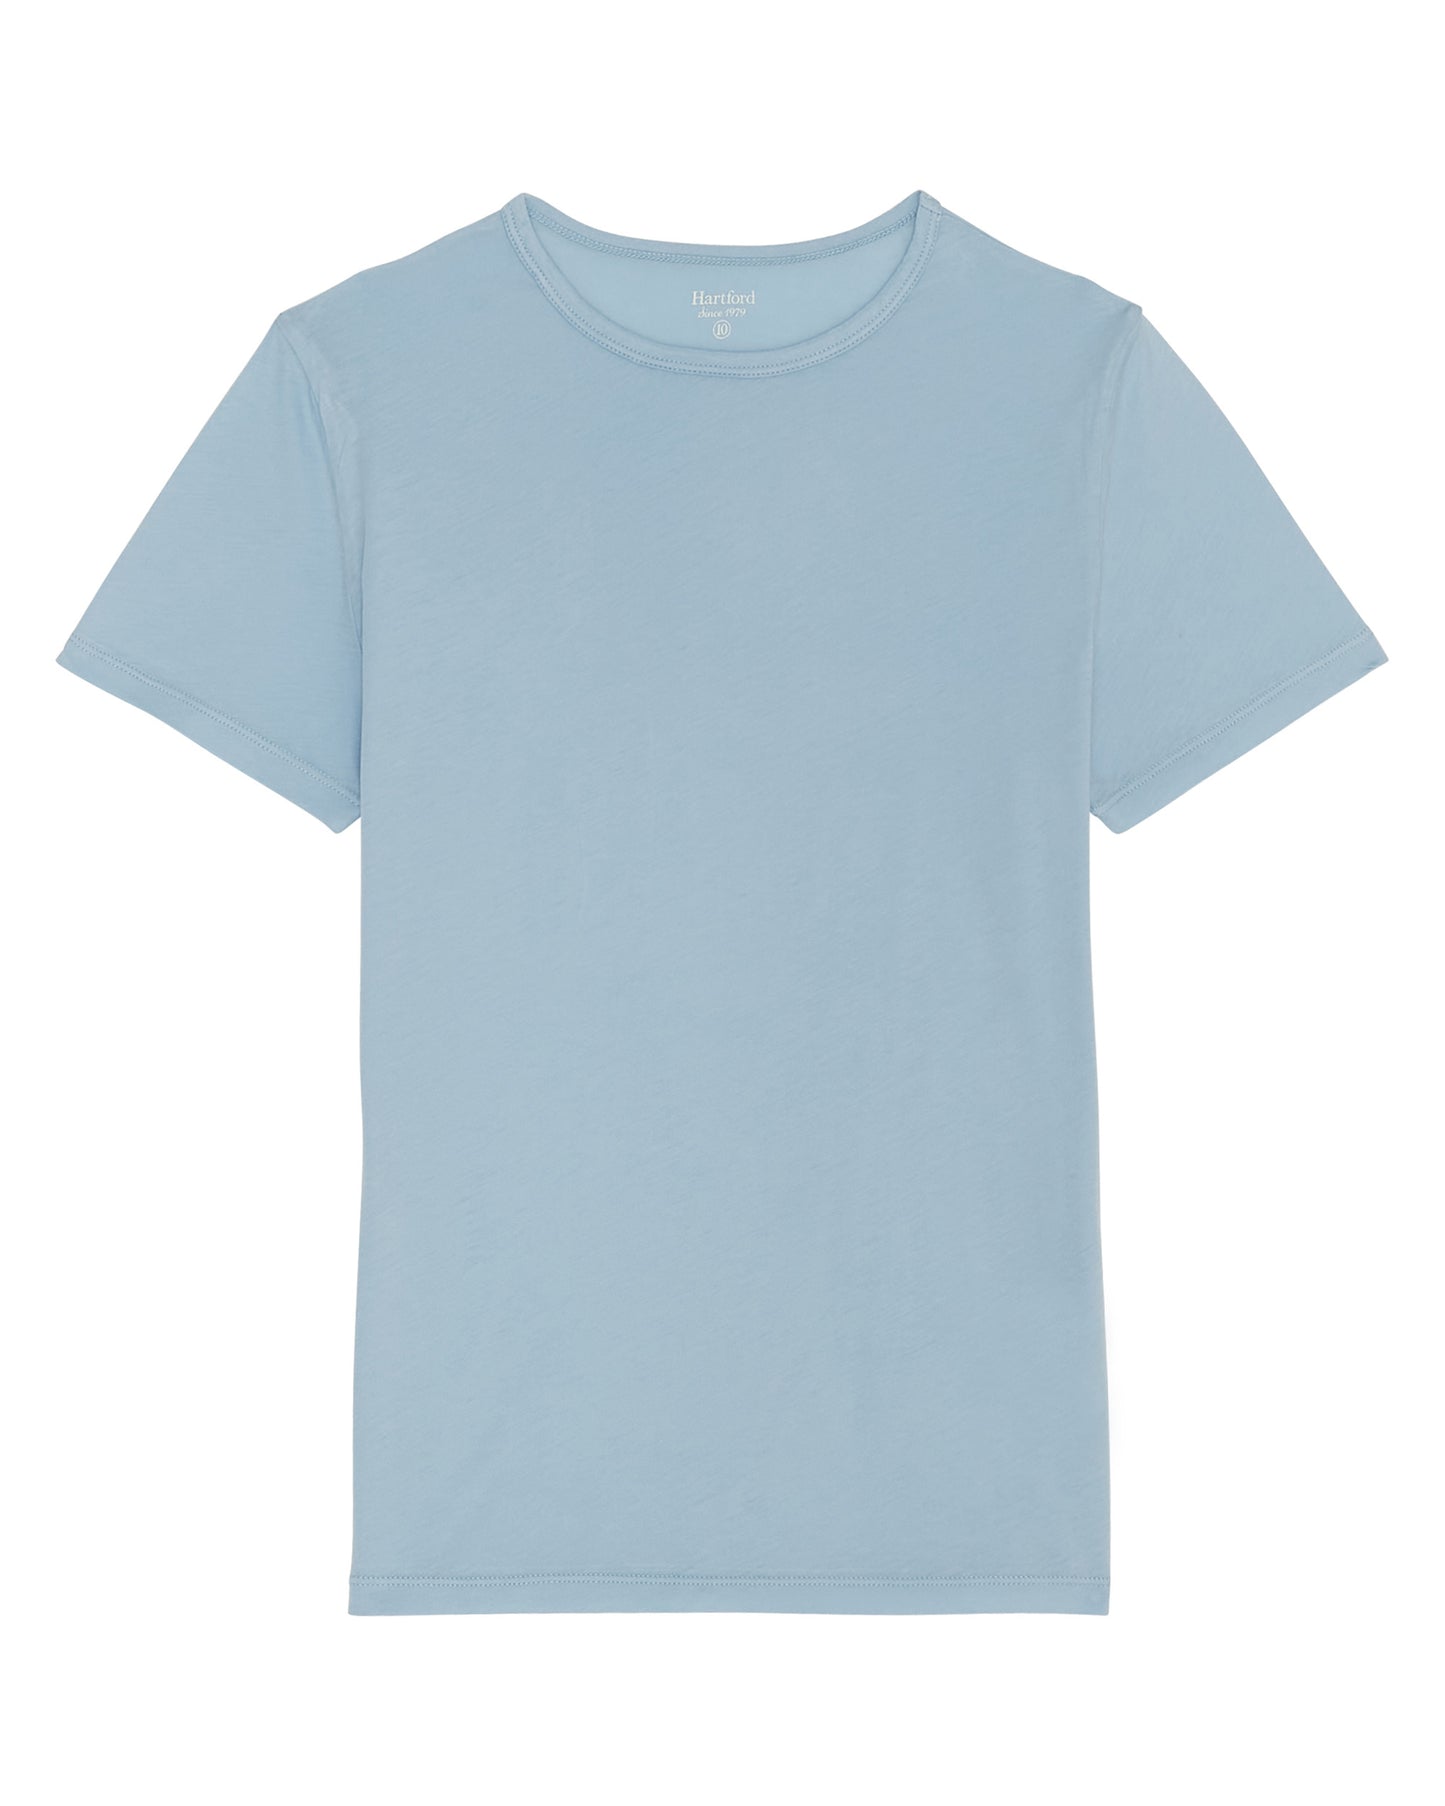 Boy's Sky Blue Light Jersey T-shirt